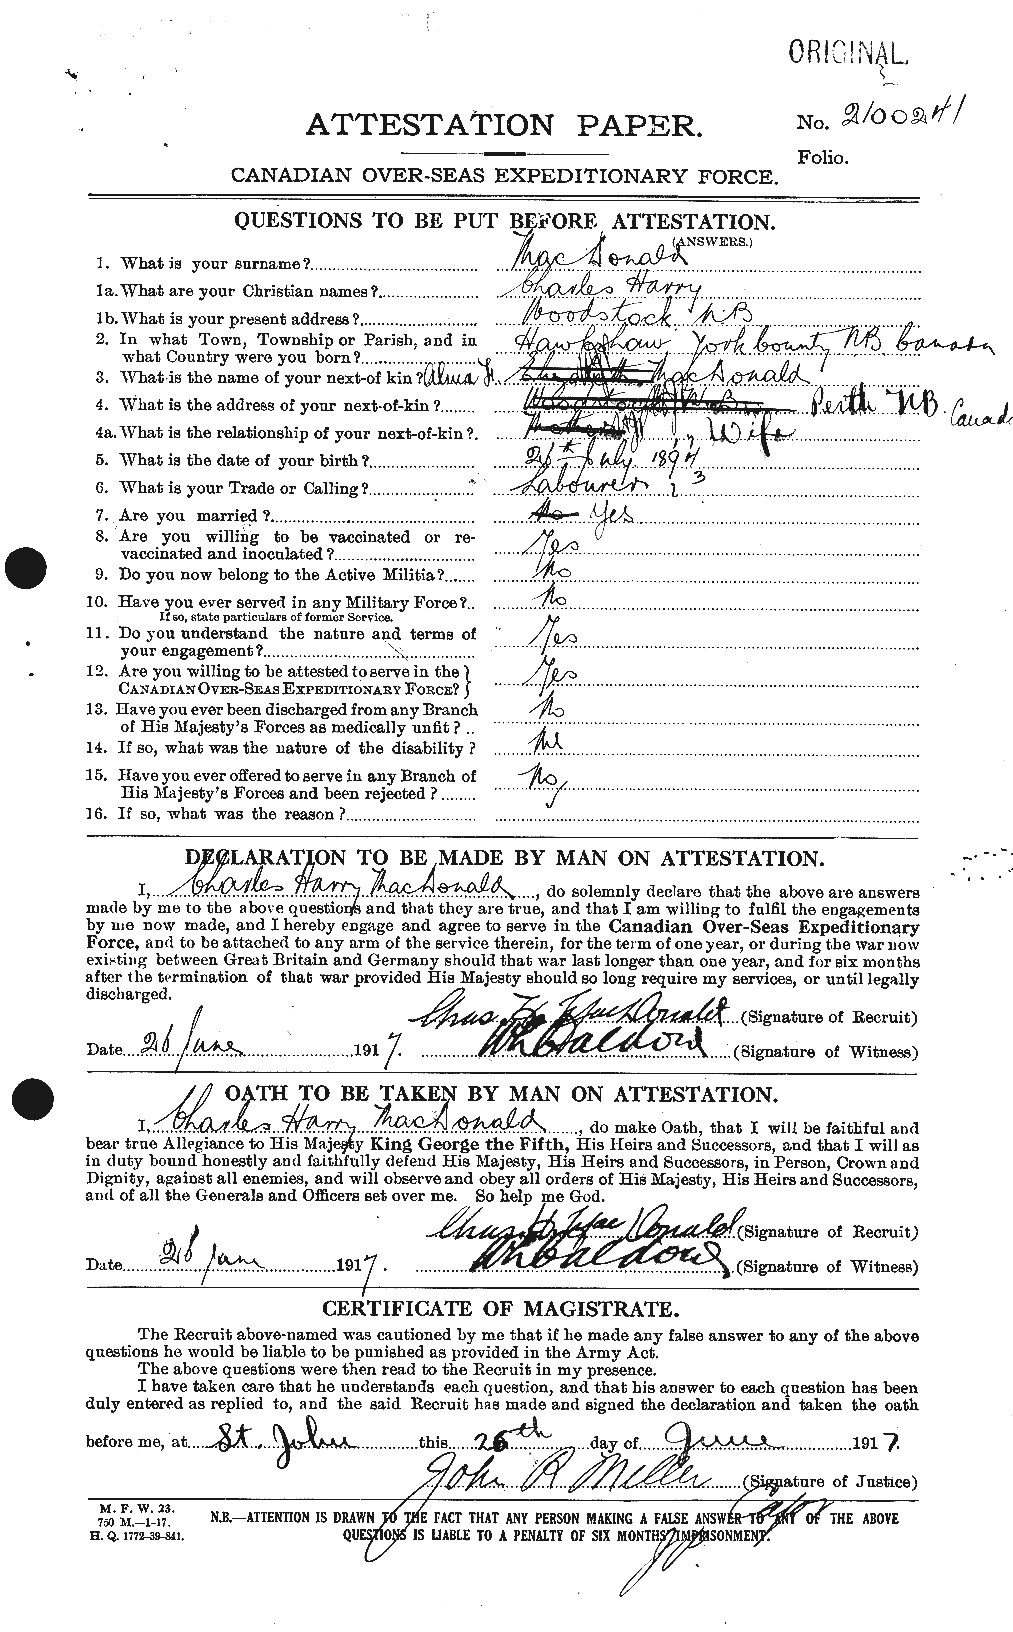 Dossiers du Personnel de la Première Guerre mondiale - CEC 517406a